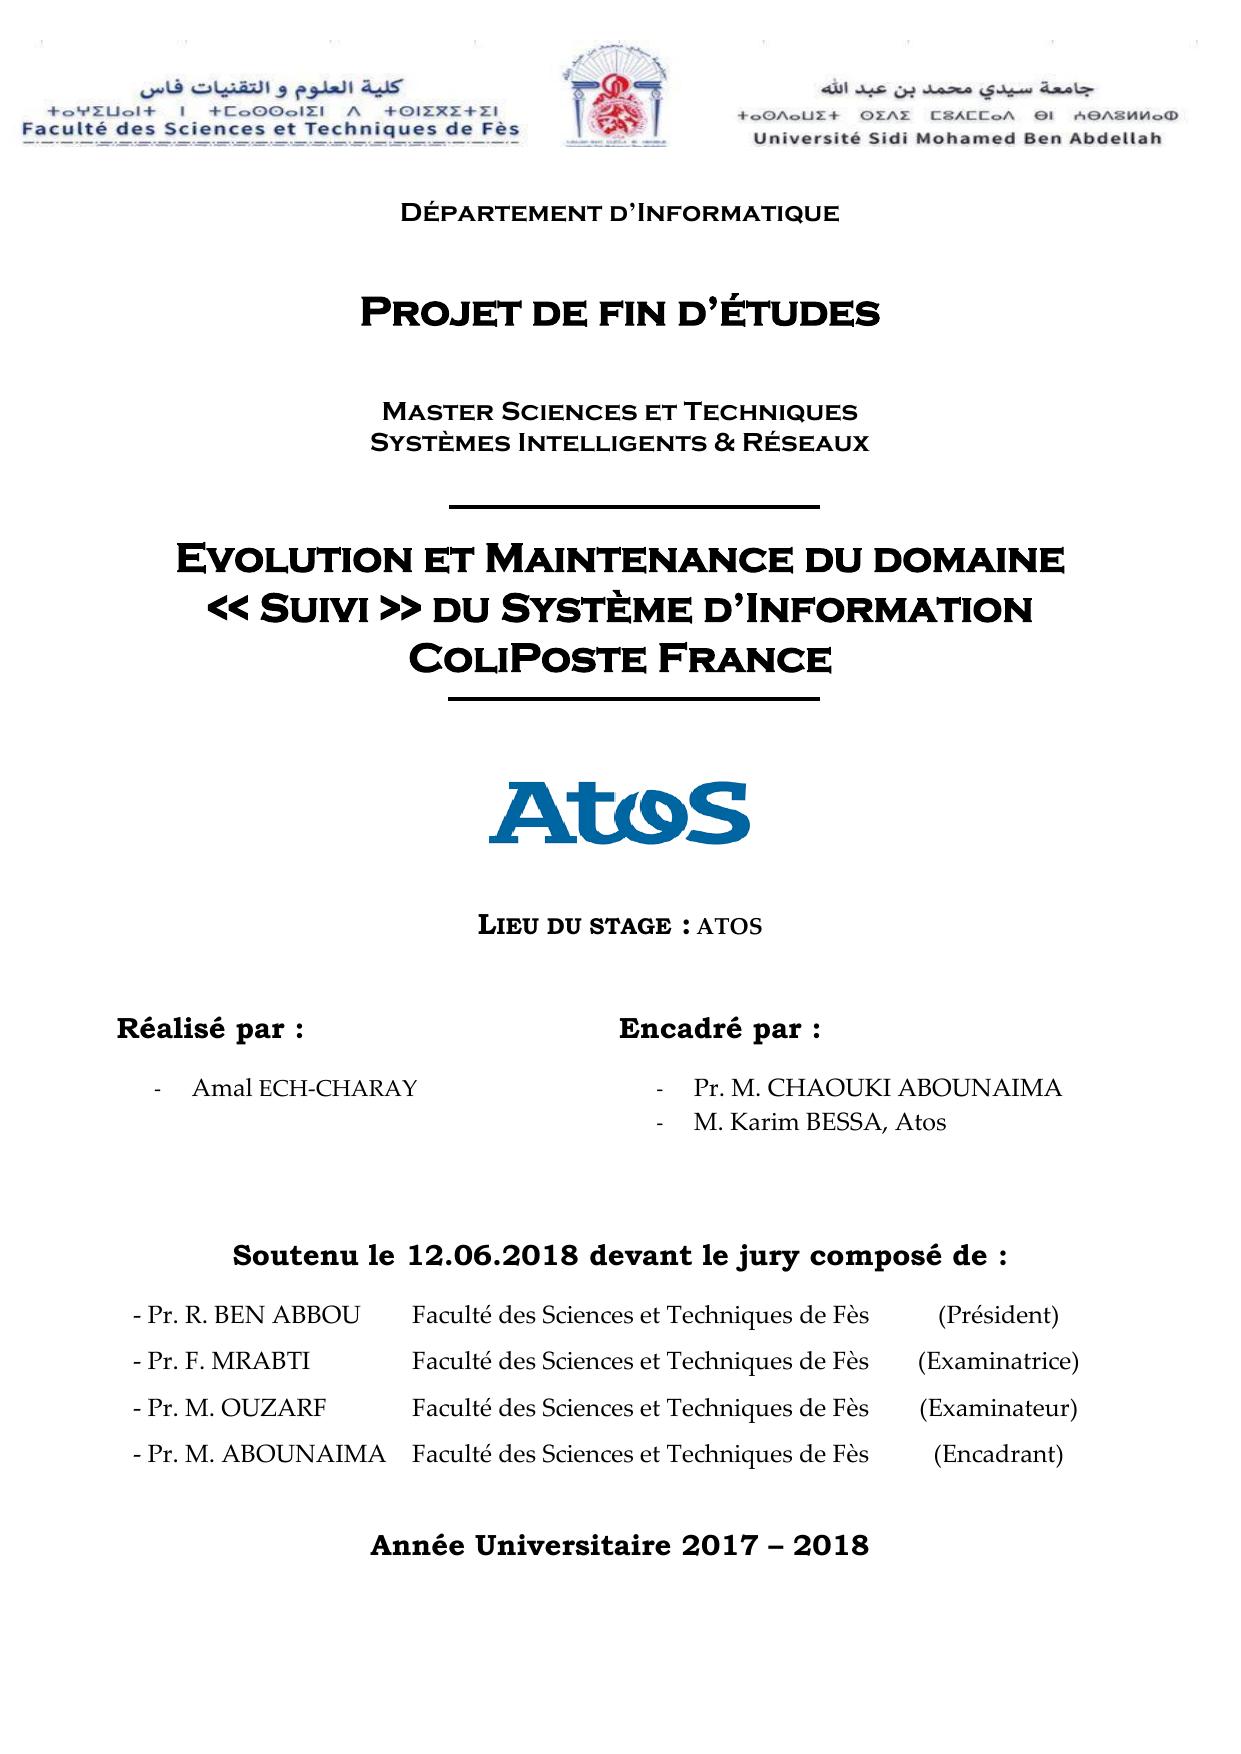 Evolution et maintenance du domaine "Suivi" du système d'information Coliposte France